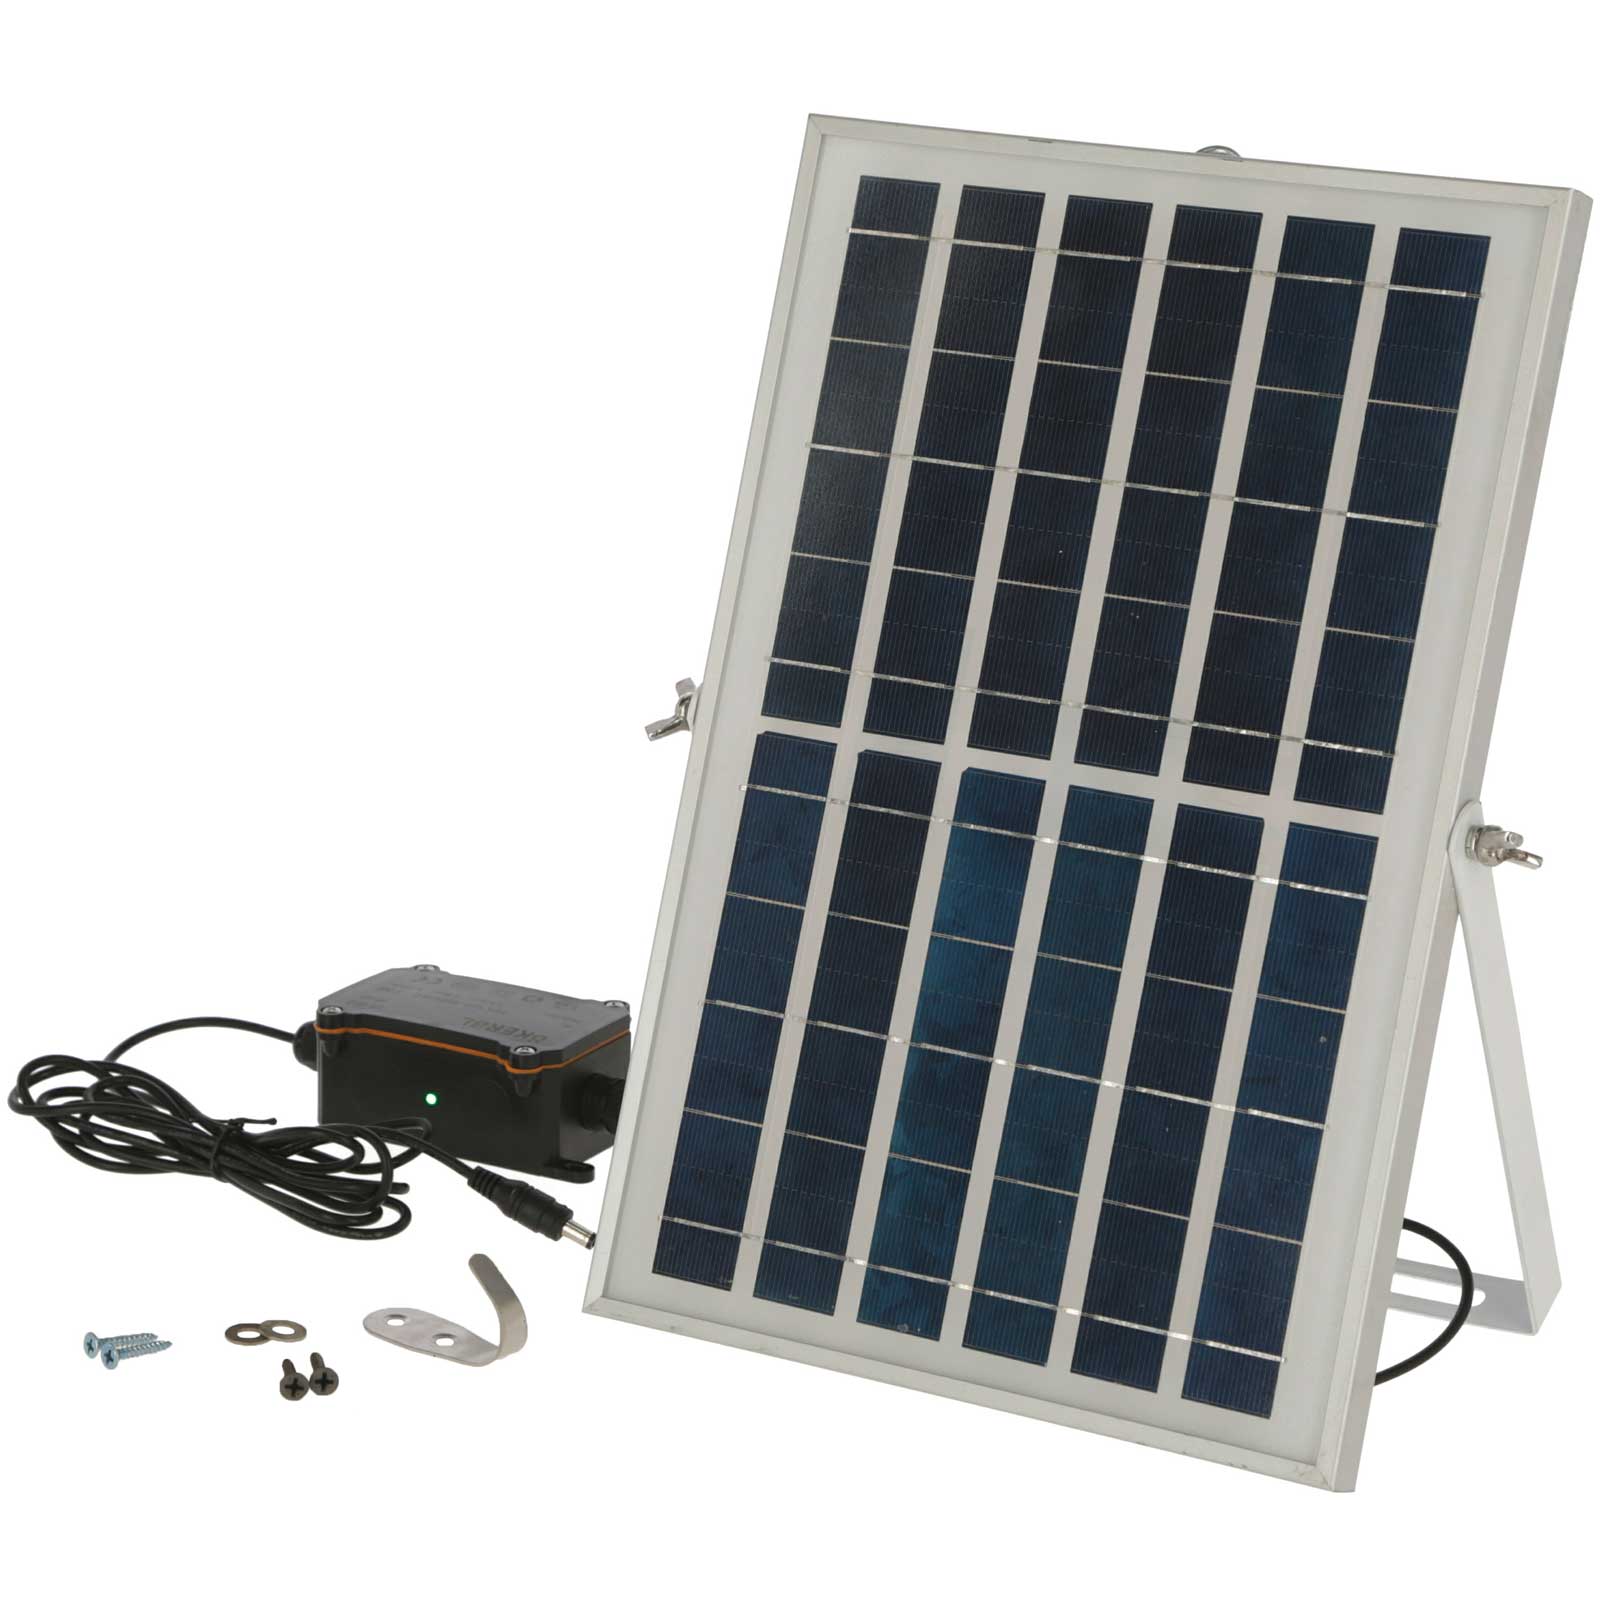 Agrarzone ușă automată pentru coteț cu energie solară 43 x 40 cm